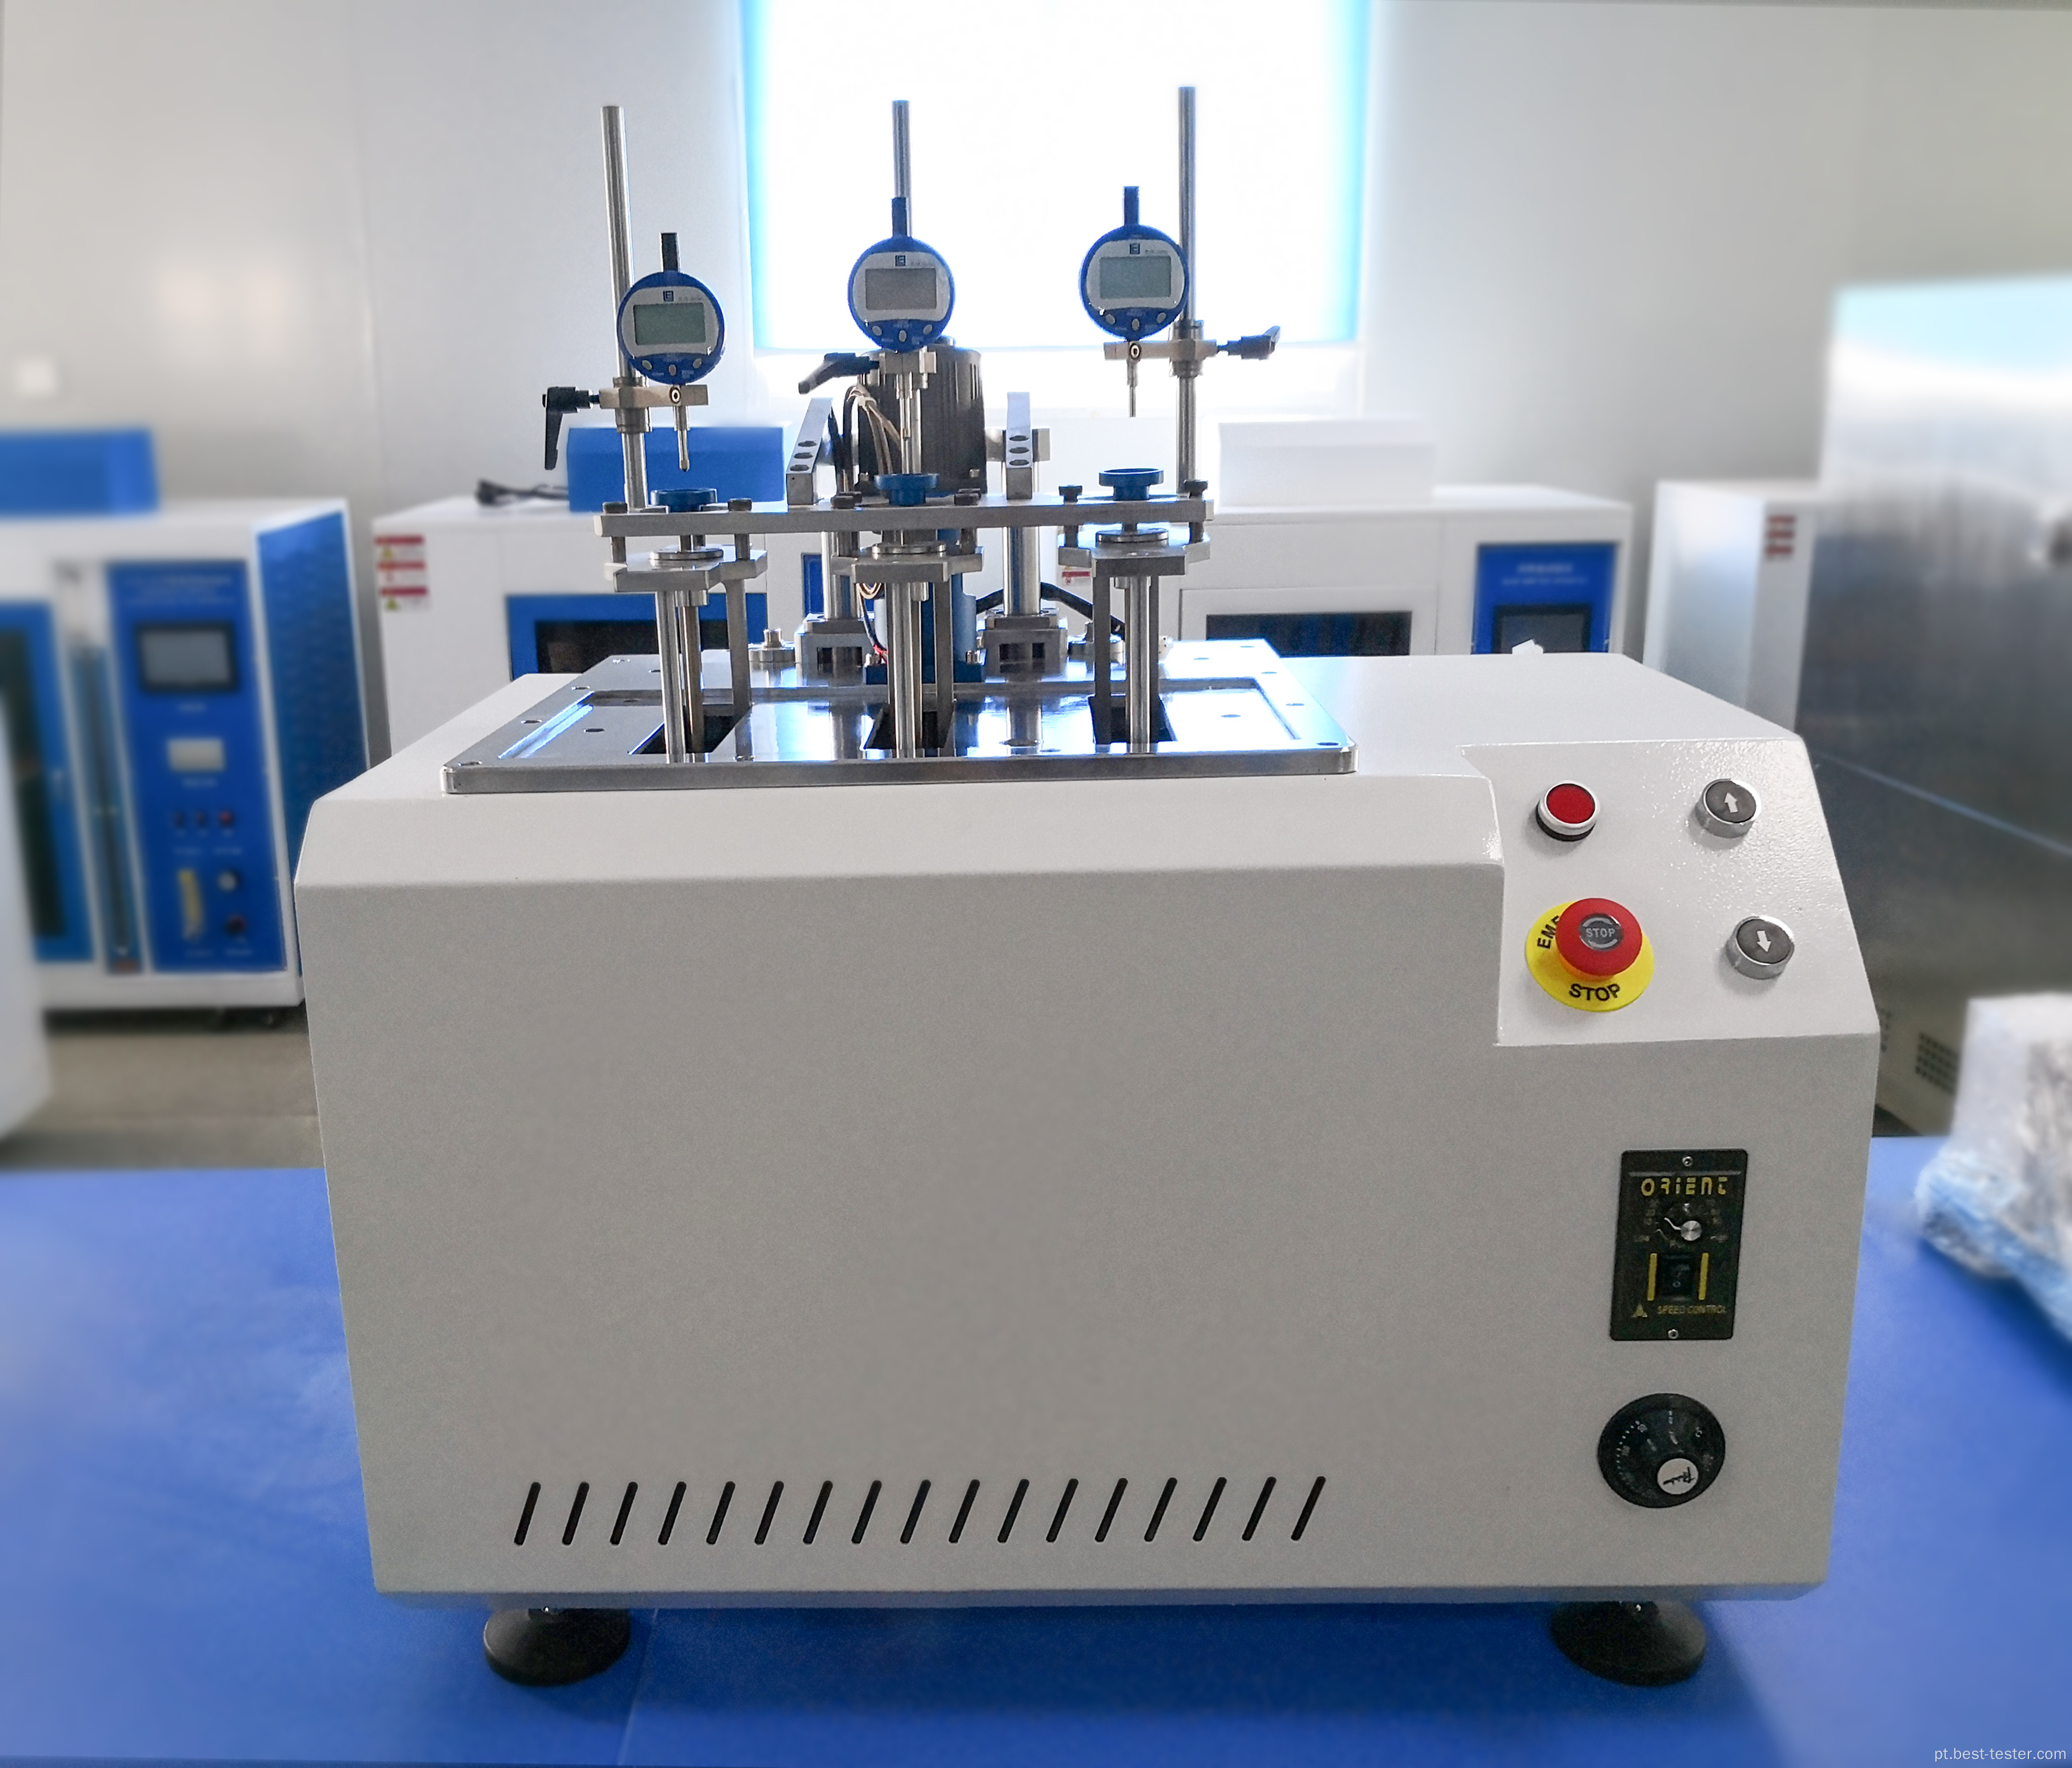 Máquina de teste de ponto de amolecimento de deformação térmica Vicat